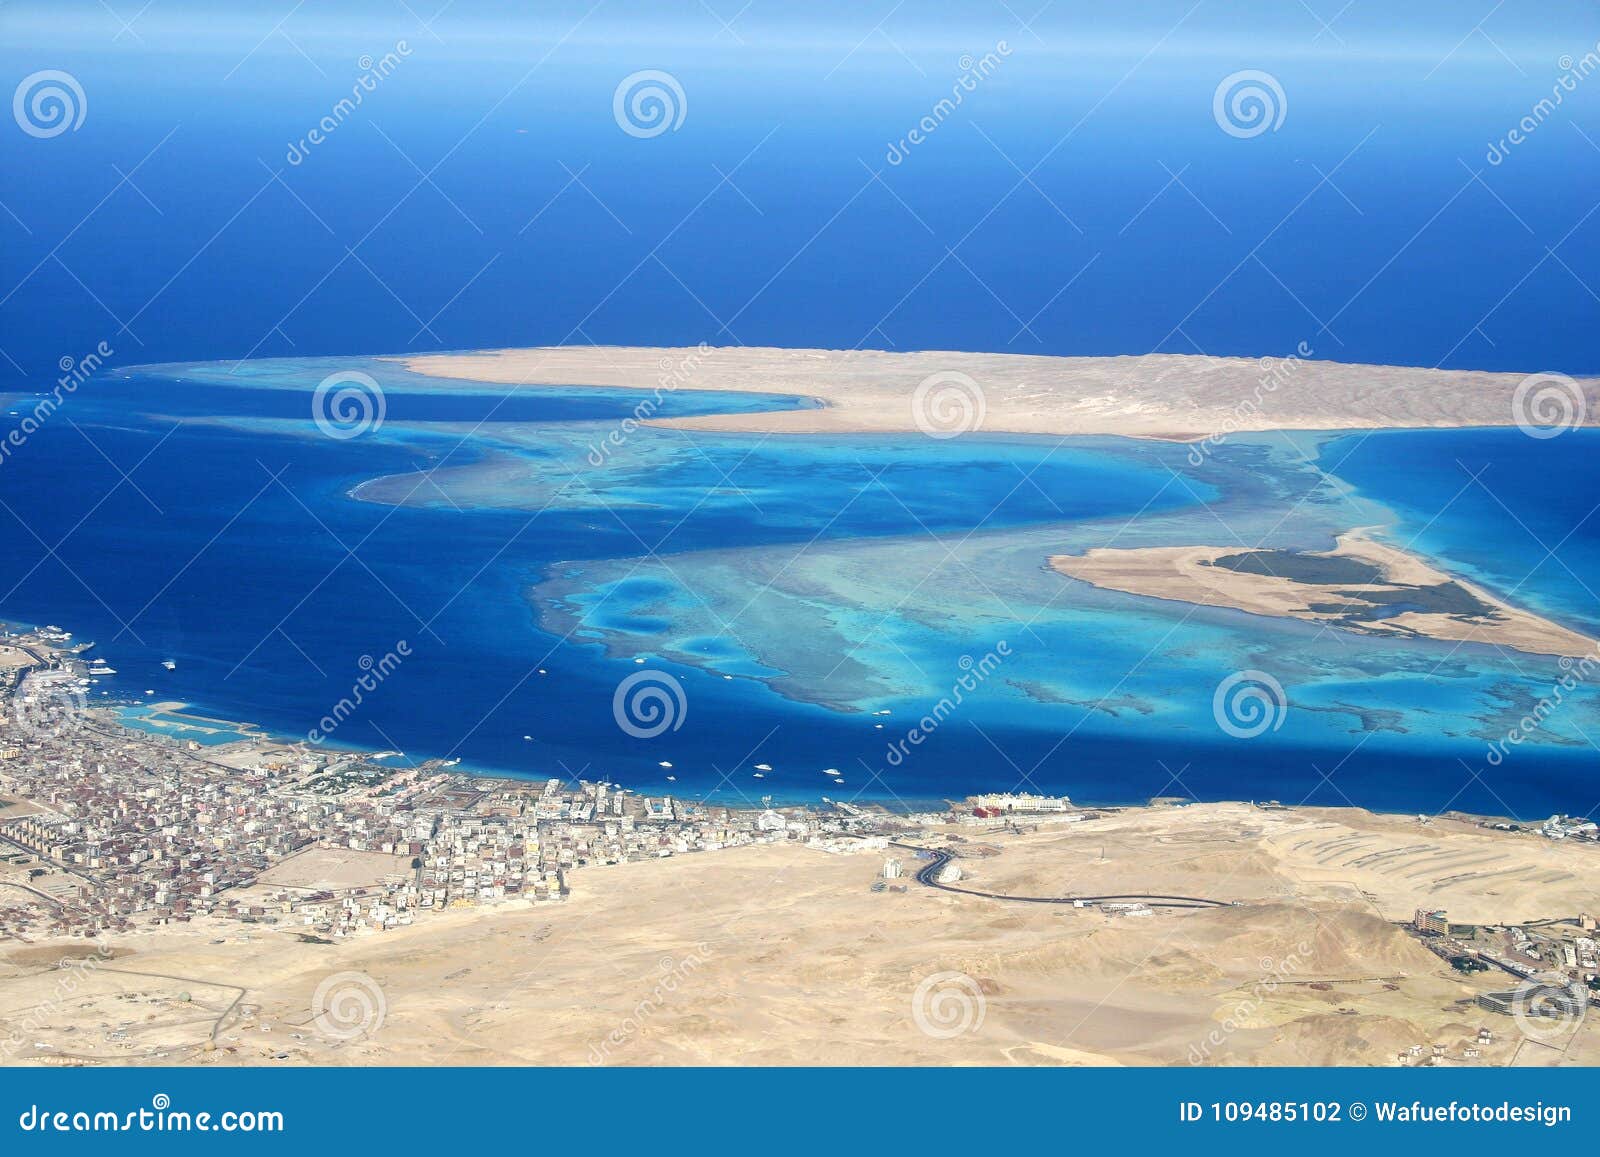 Giftun Wyspa Egipt Zdjecie Stock Obraz Zlozonej Z Wyspa 109485102